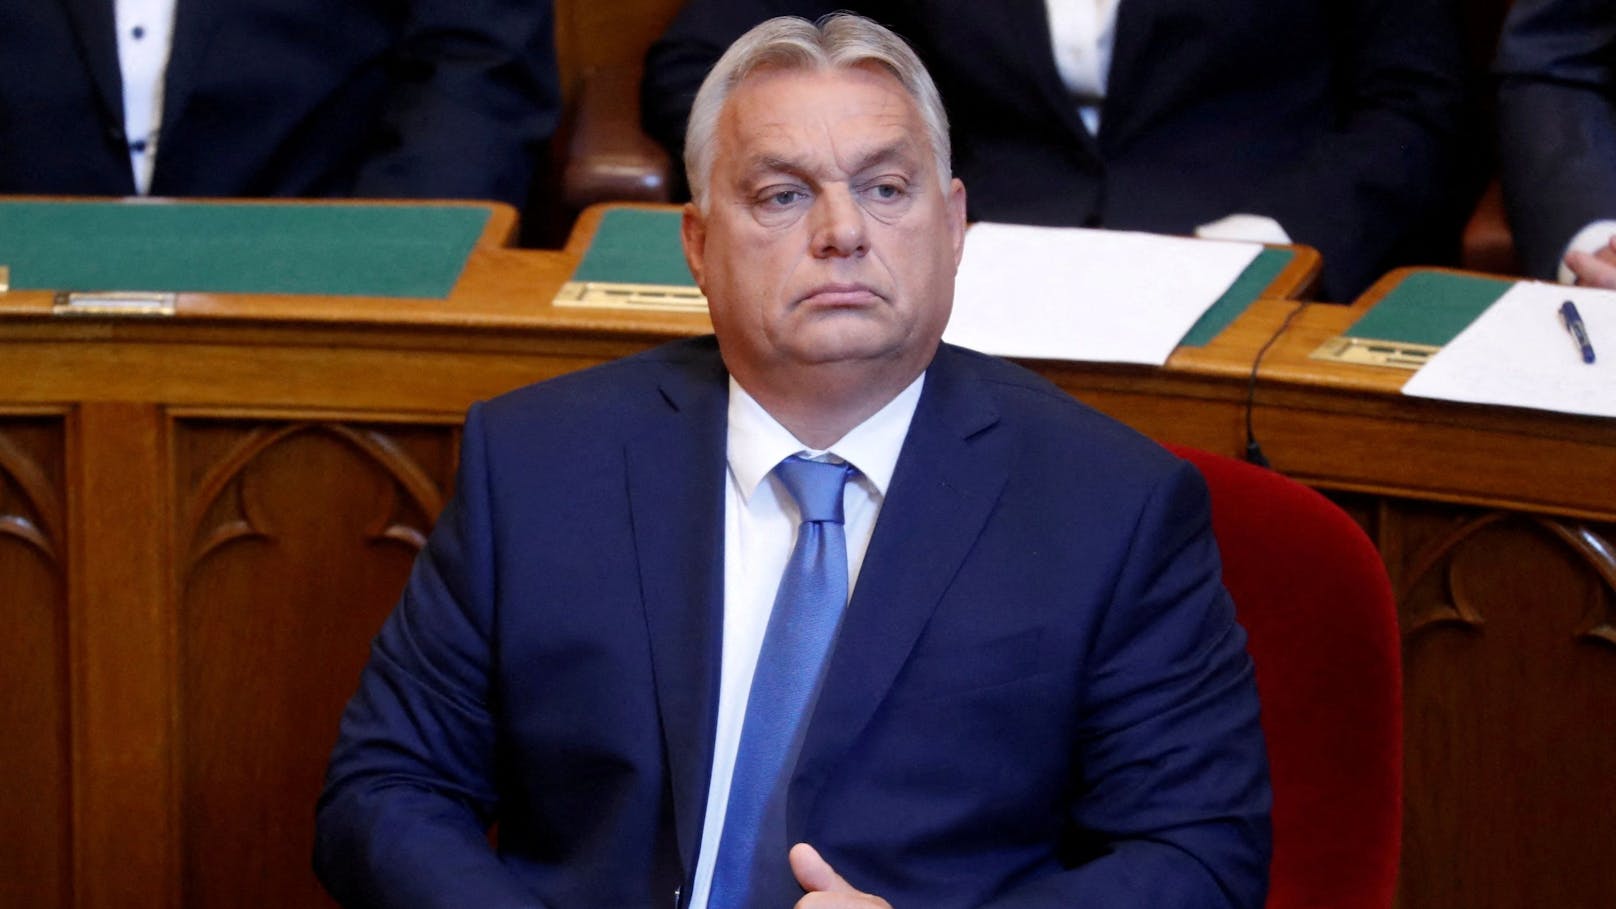 Orban nennt EU "Parodie" der ehemaligen Sowjetunion